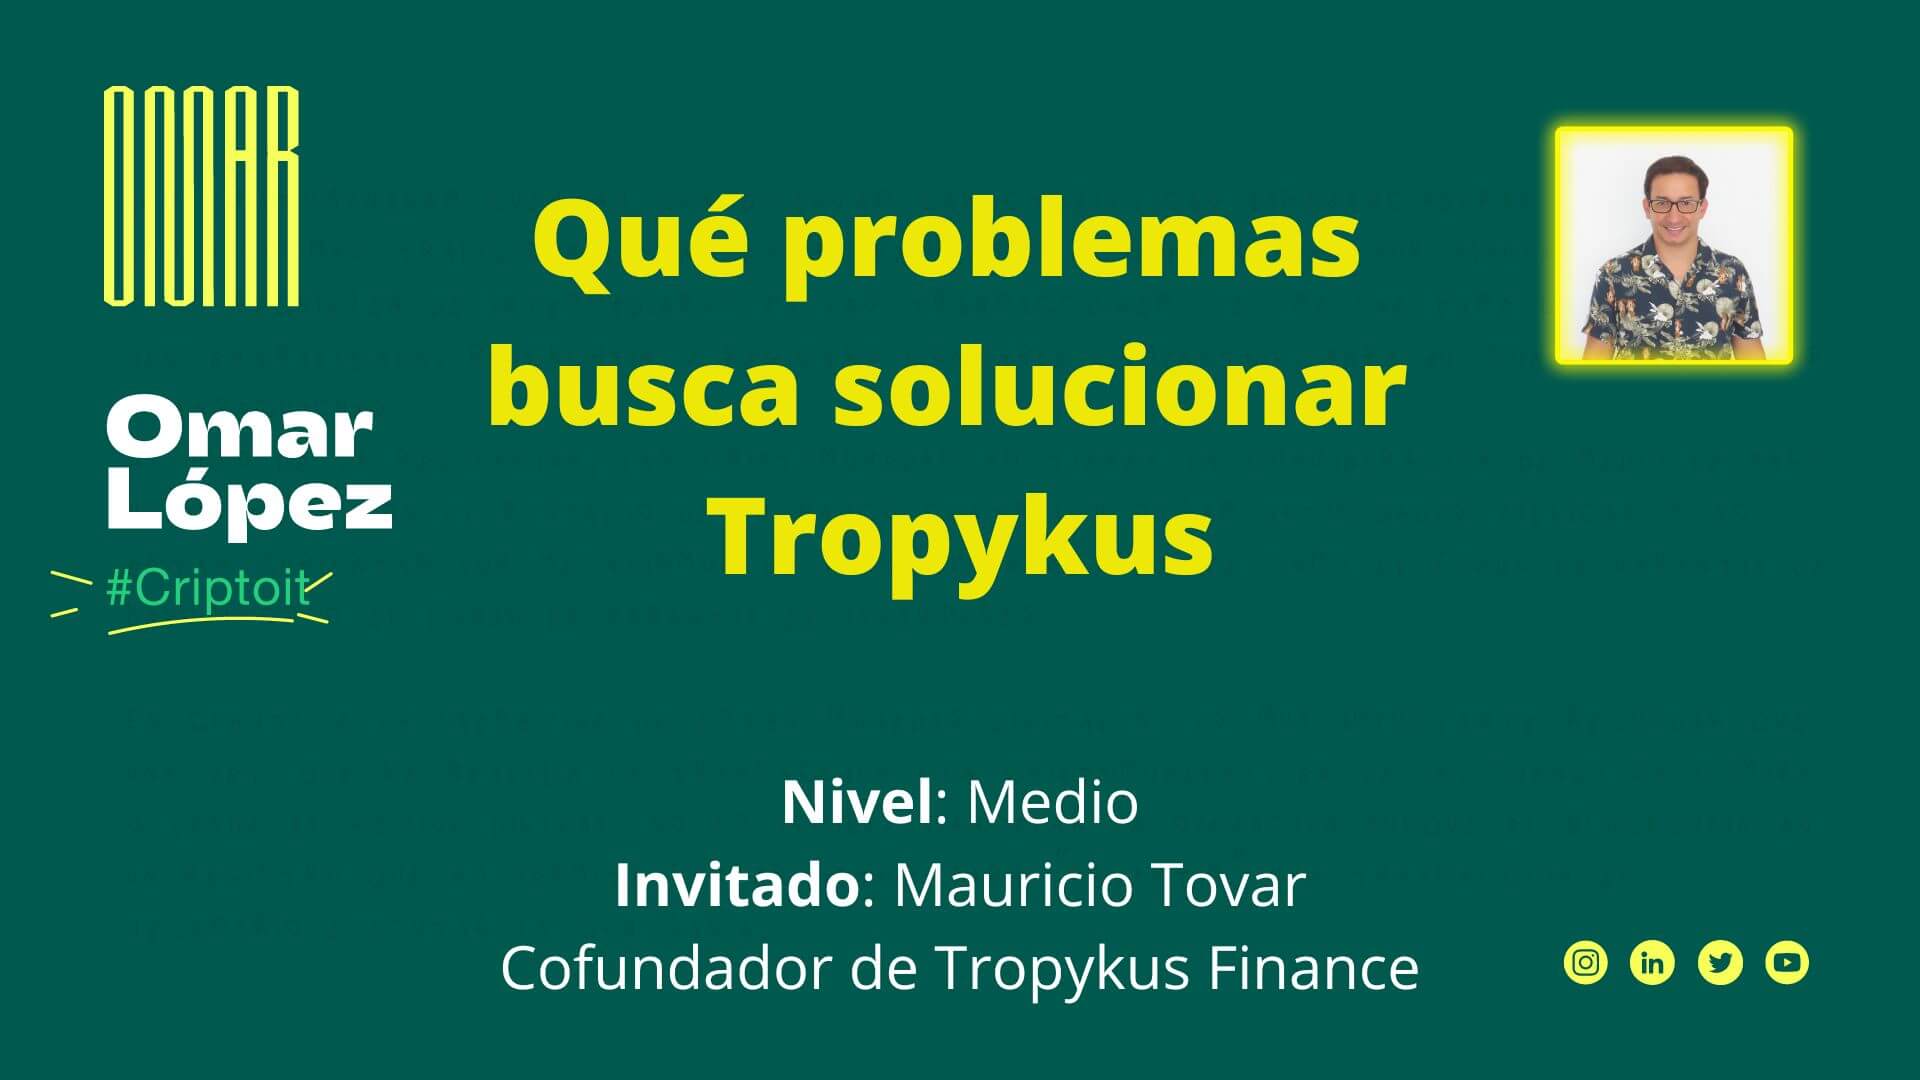 Qué problemas busca solucionar Tropykus